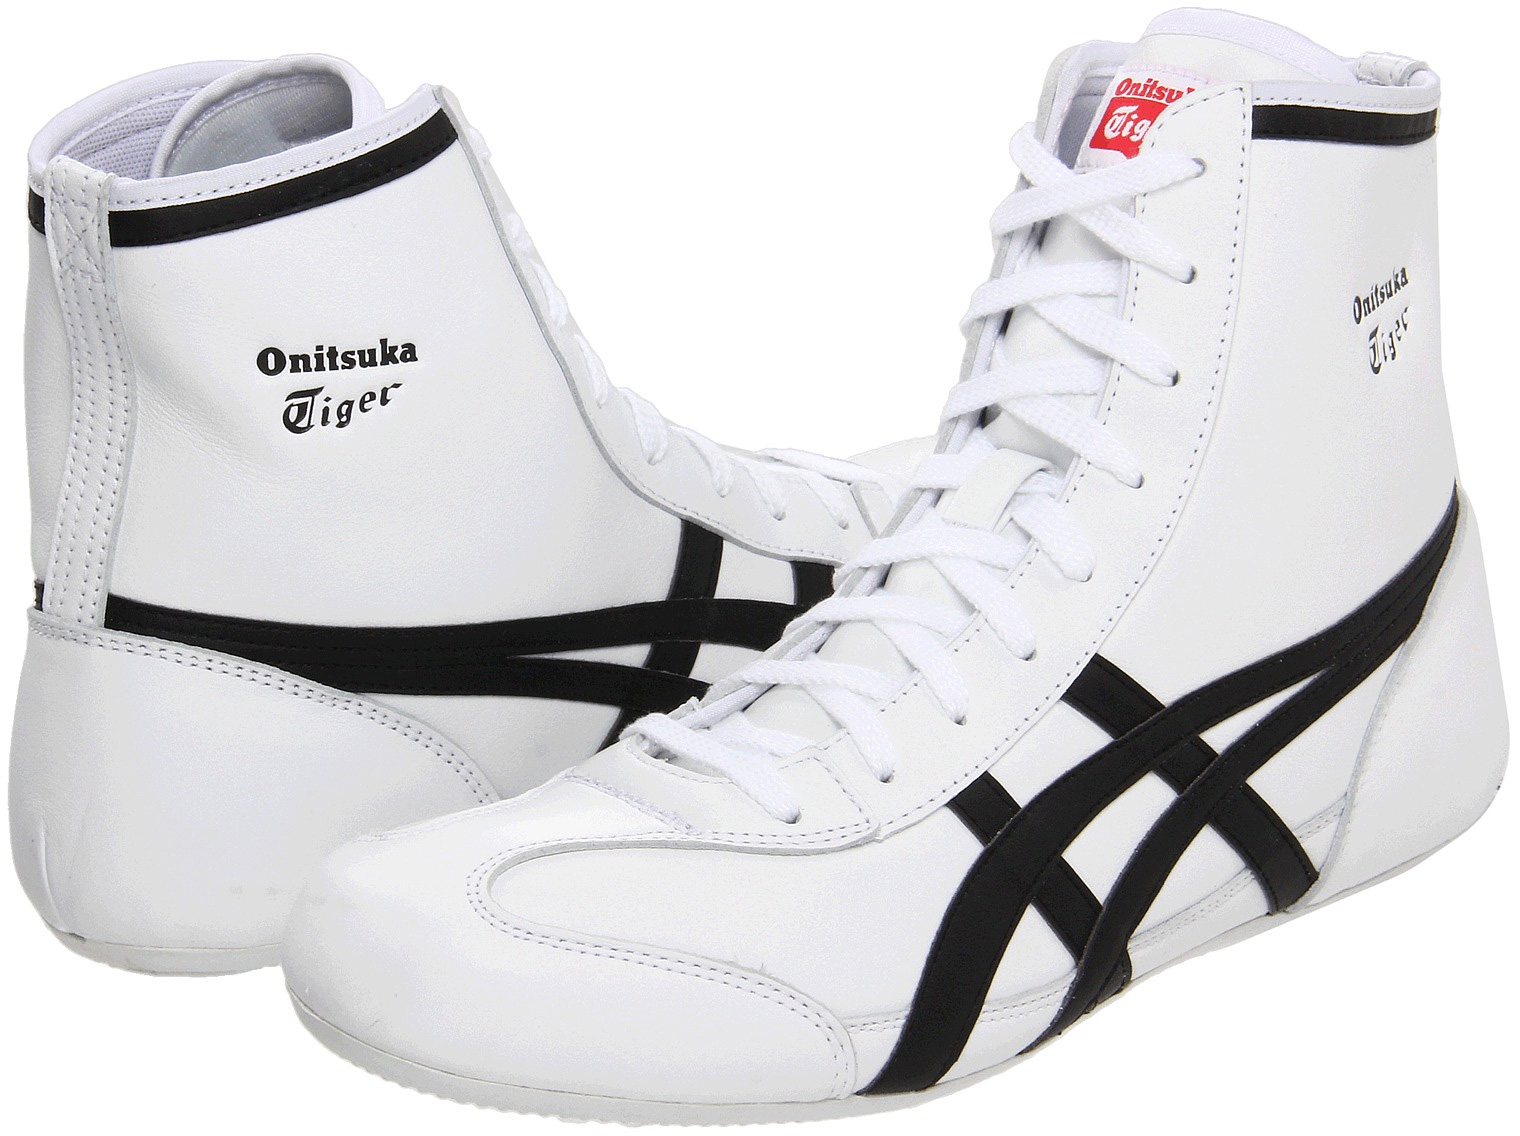 Buy onitsuka tiger 81 wrestling shoes 